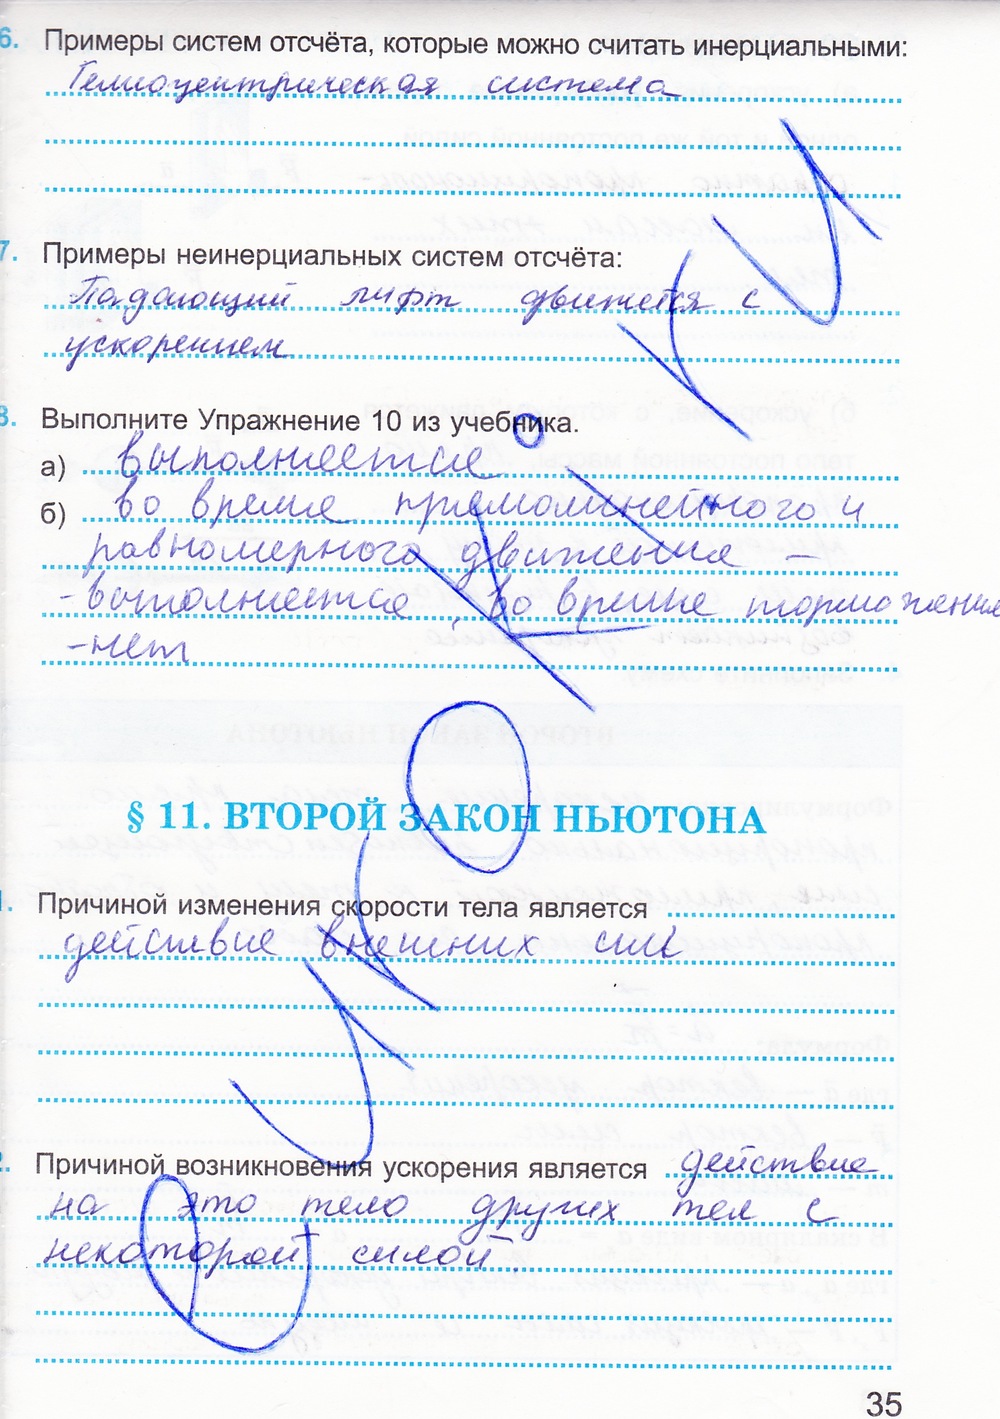 Касьянов в.а рабочая тетрадь по физике: 7 класс: к учебнику